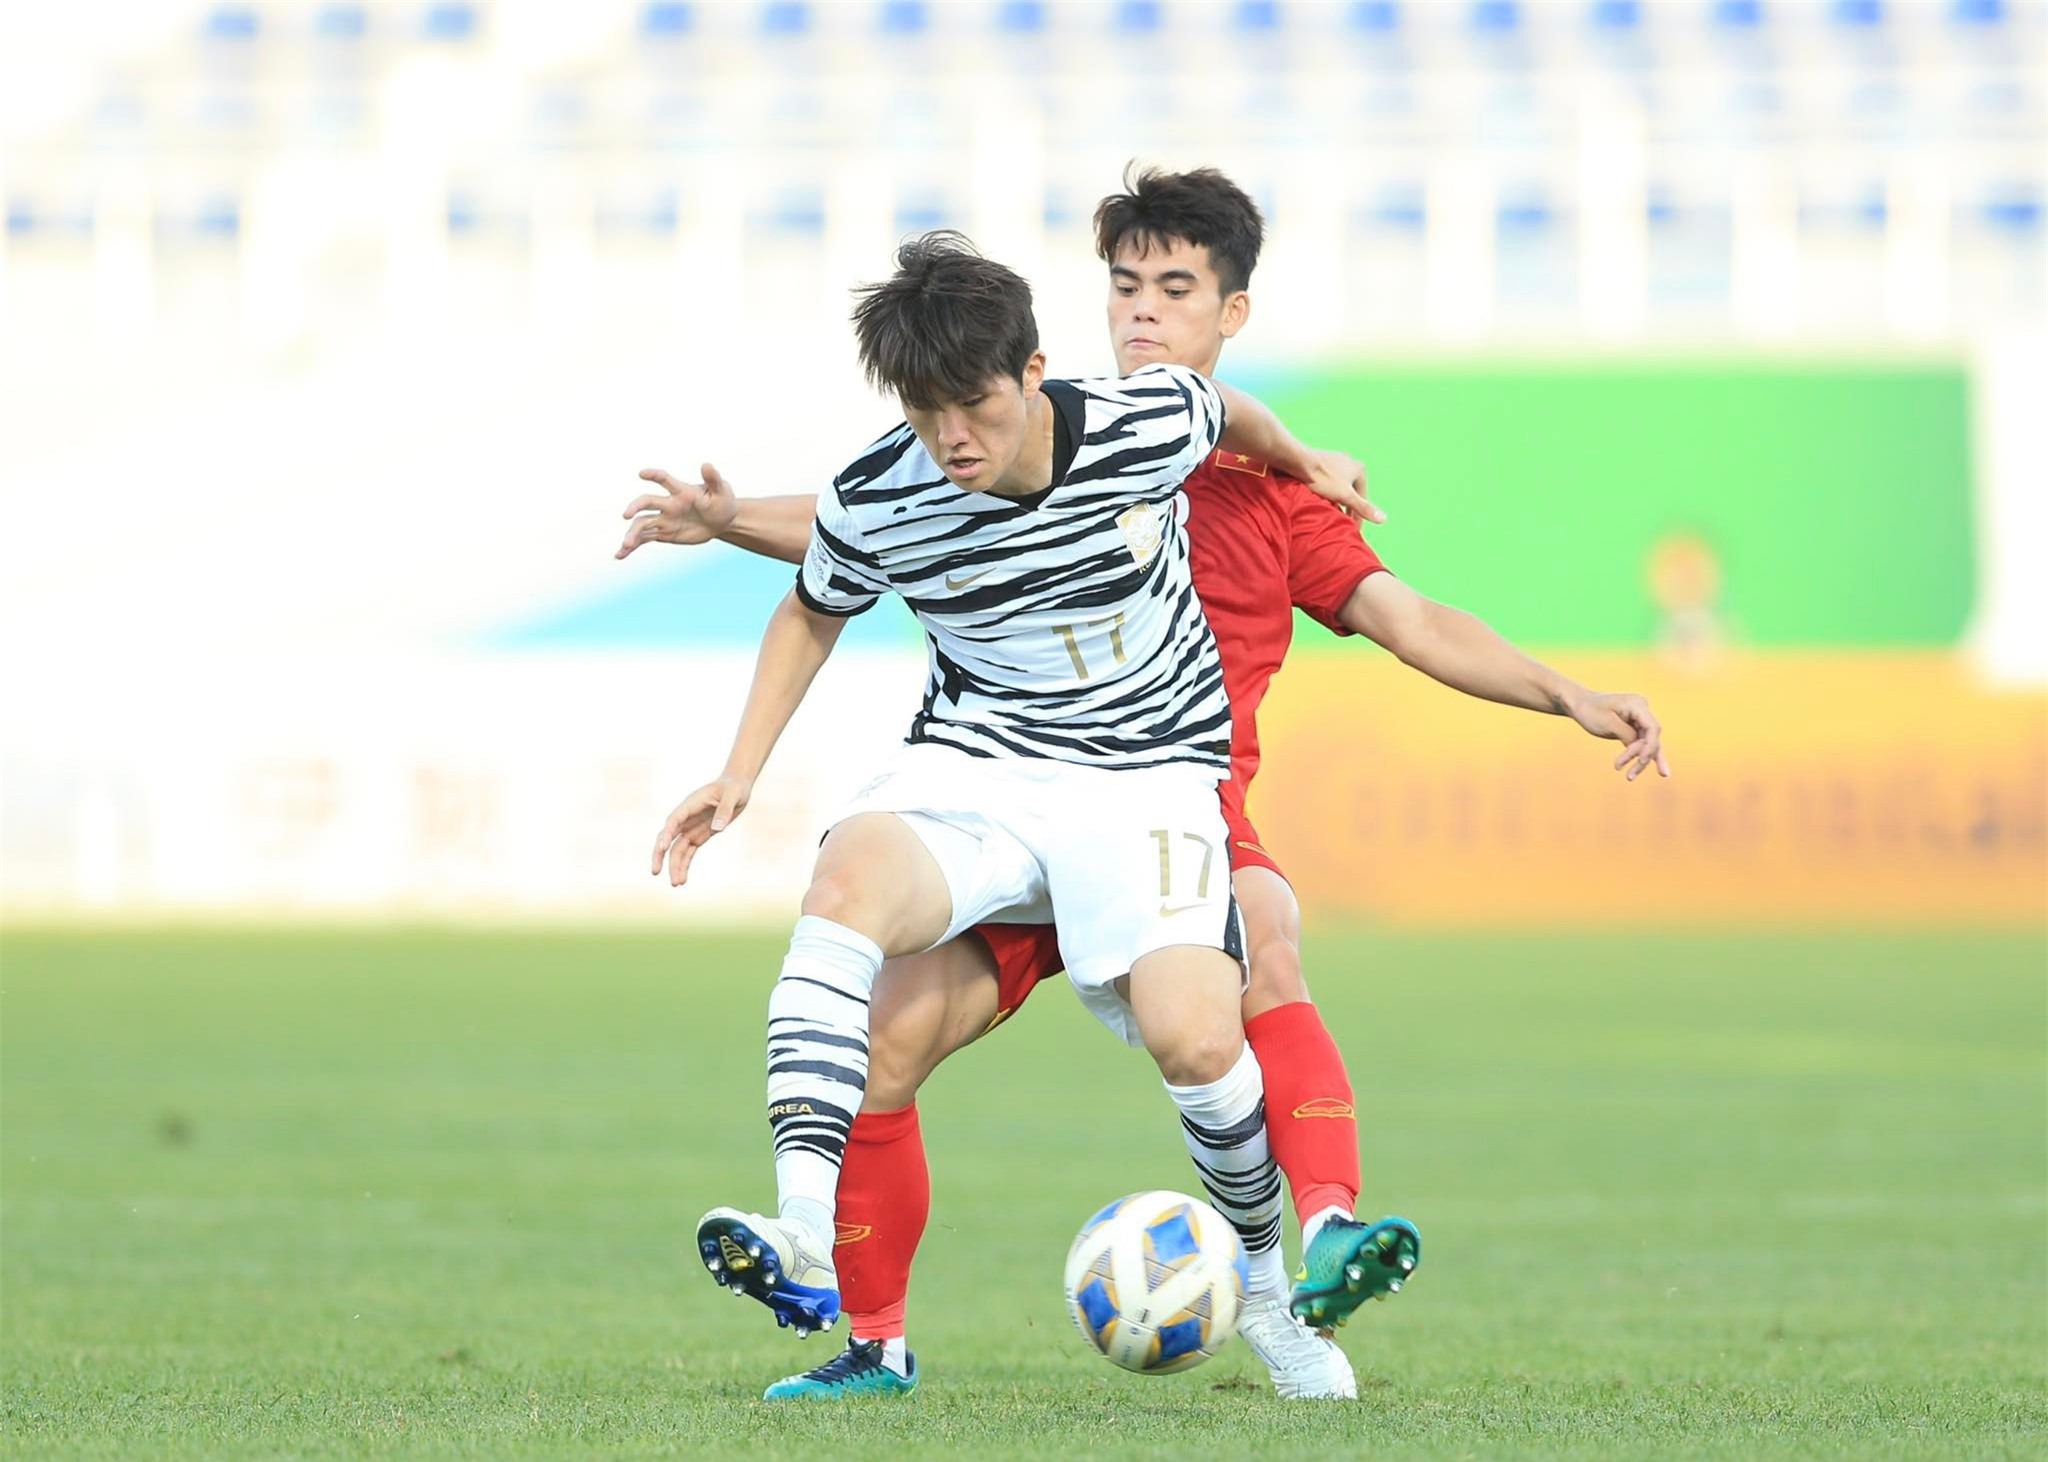 Khuất Văn Khang được bình chọn là cầu thủ xuất sắc nhất trận - Ảnh: Quỳnh Anh 